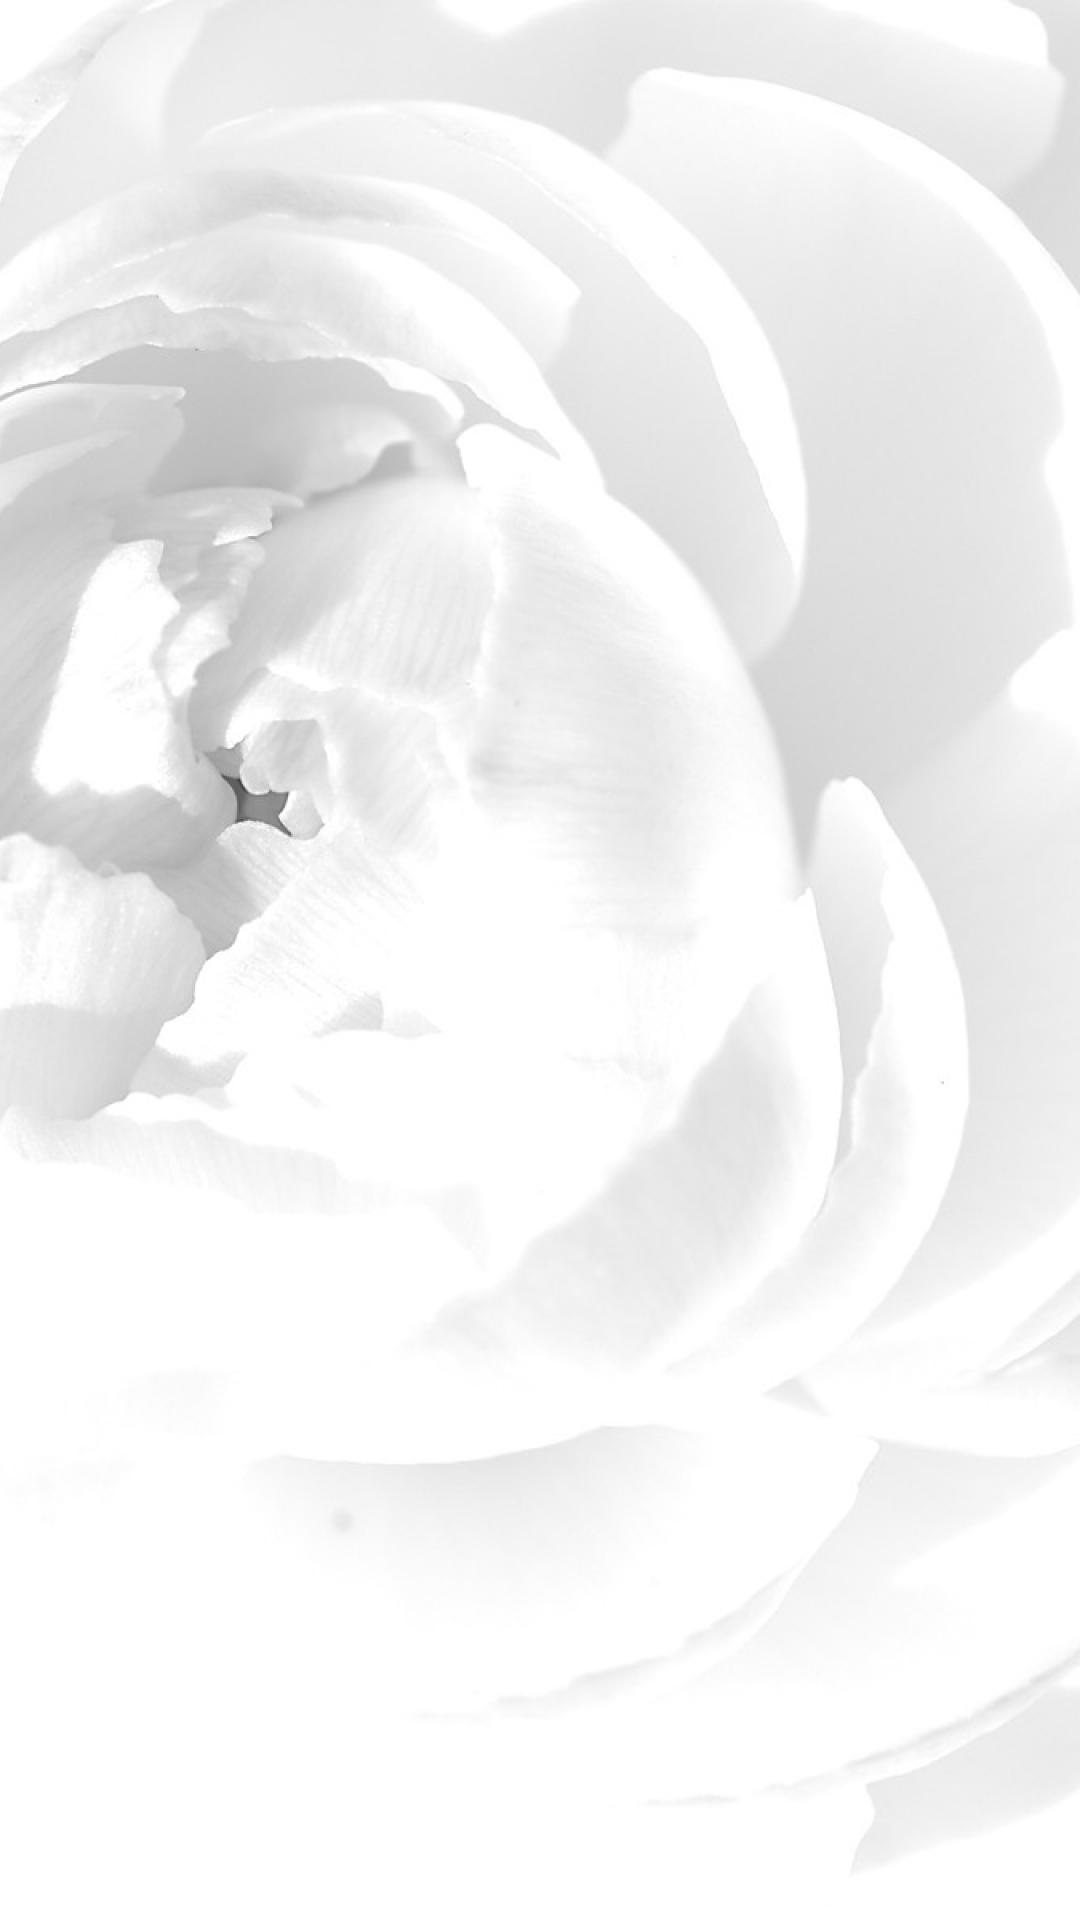 carta da parati bianca per iphone,bianca,petalo,bianco e nero,fotografia in bianco e nero,fiore